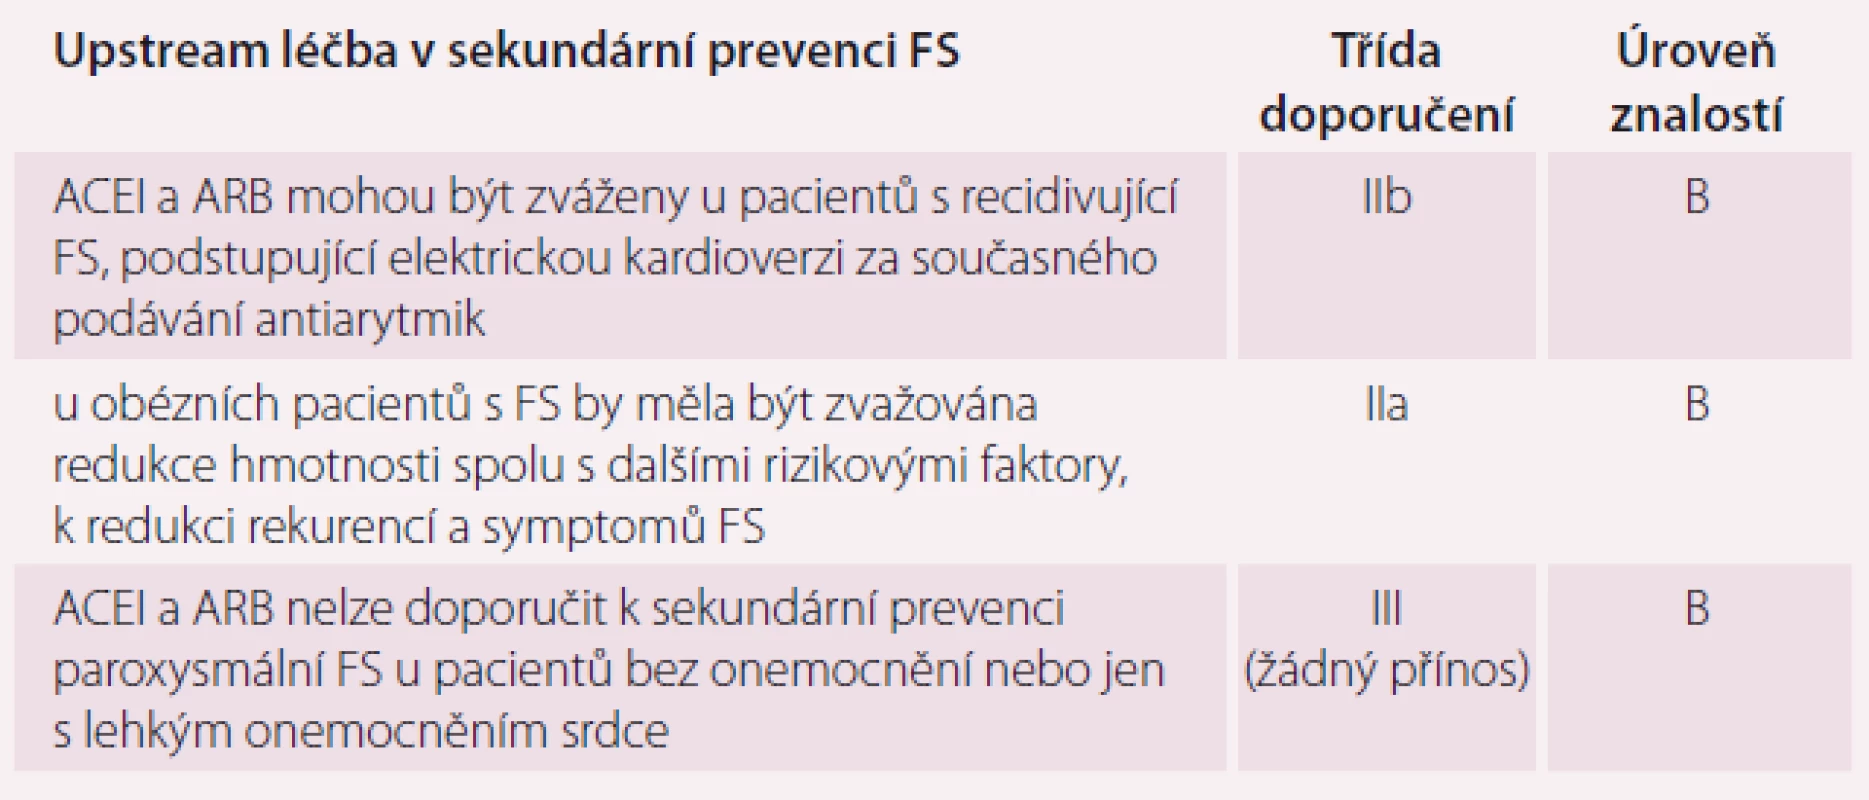 Upstream léčba v sekundární prevenci FS. Upraveno dle [10].